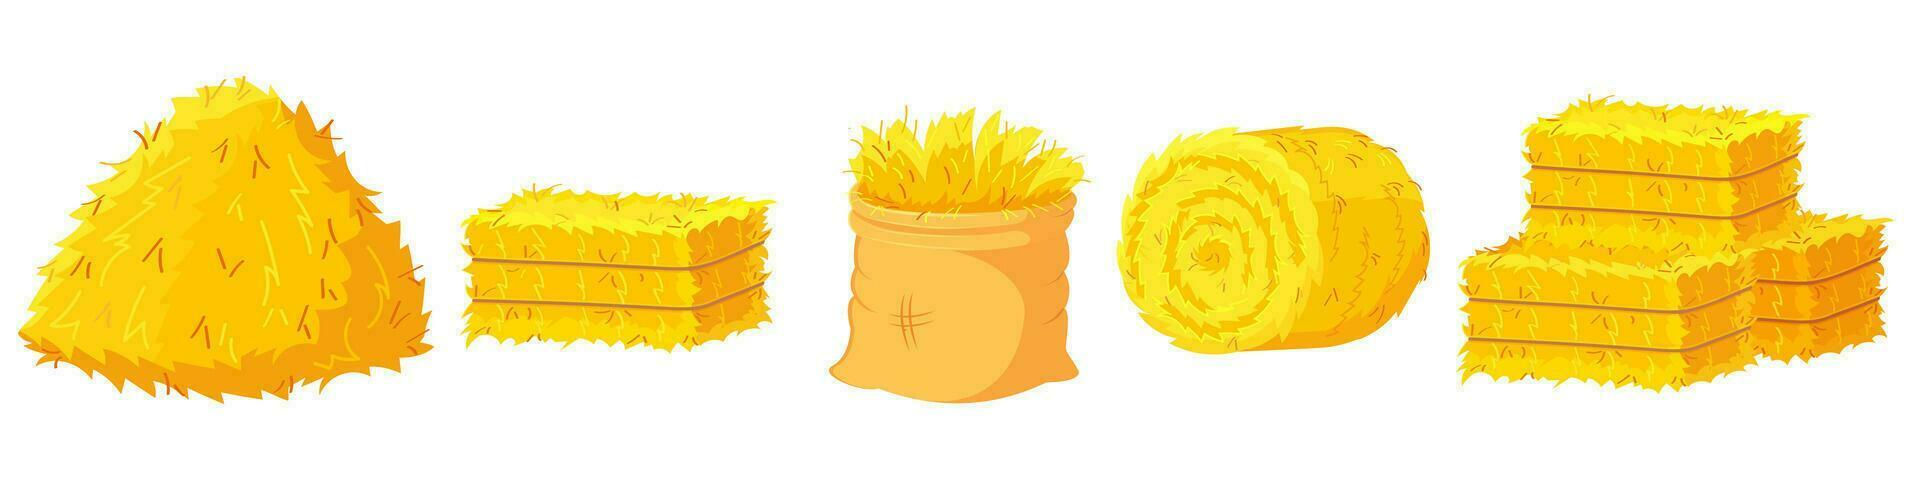 sugrör balar. stack av sugrör briketter. uppsättning med tecknad serie illustrationer av torr gul gräs vektor